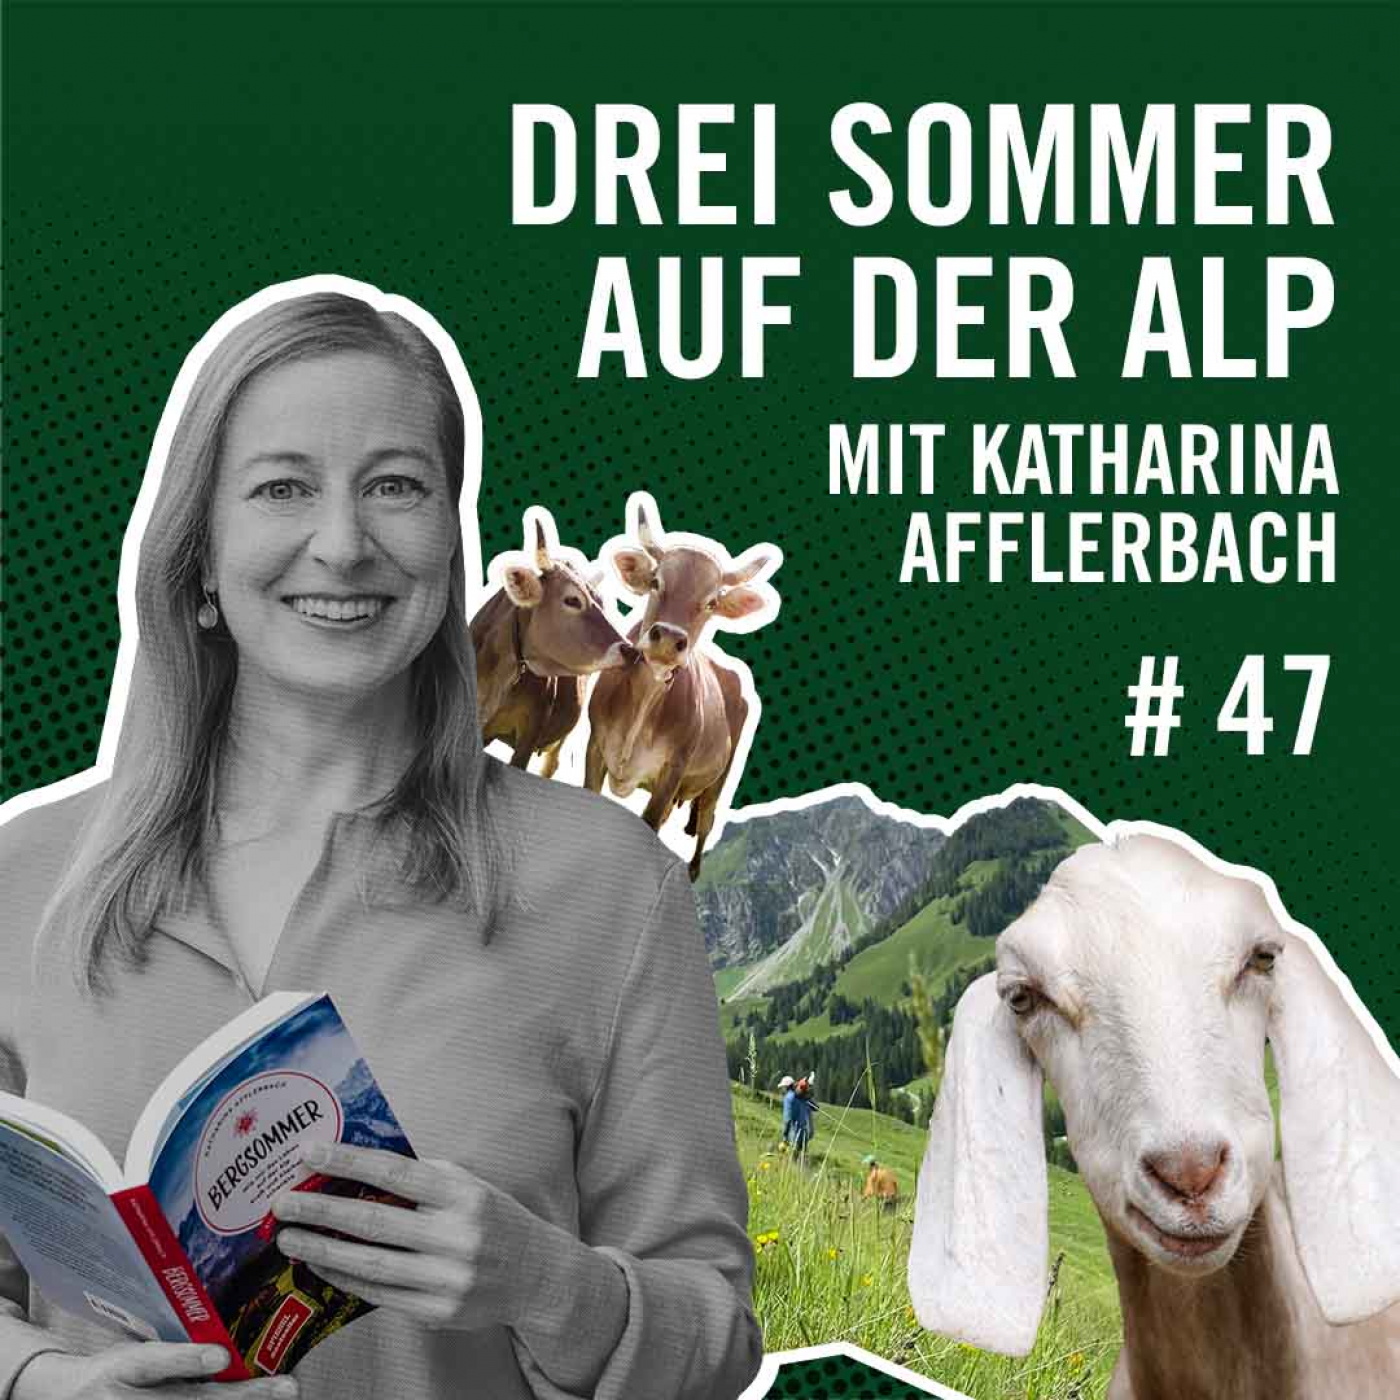 Drei Sommer auf der Alp mit Katharina Afflerbach #47